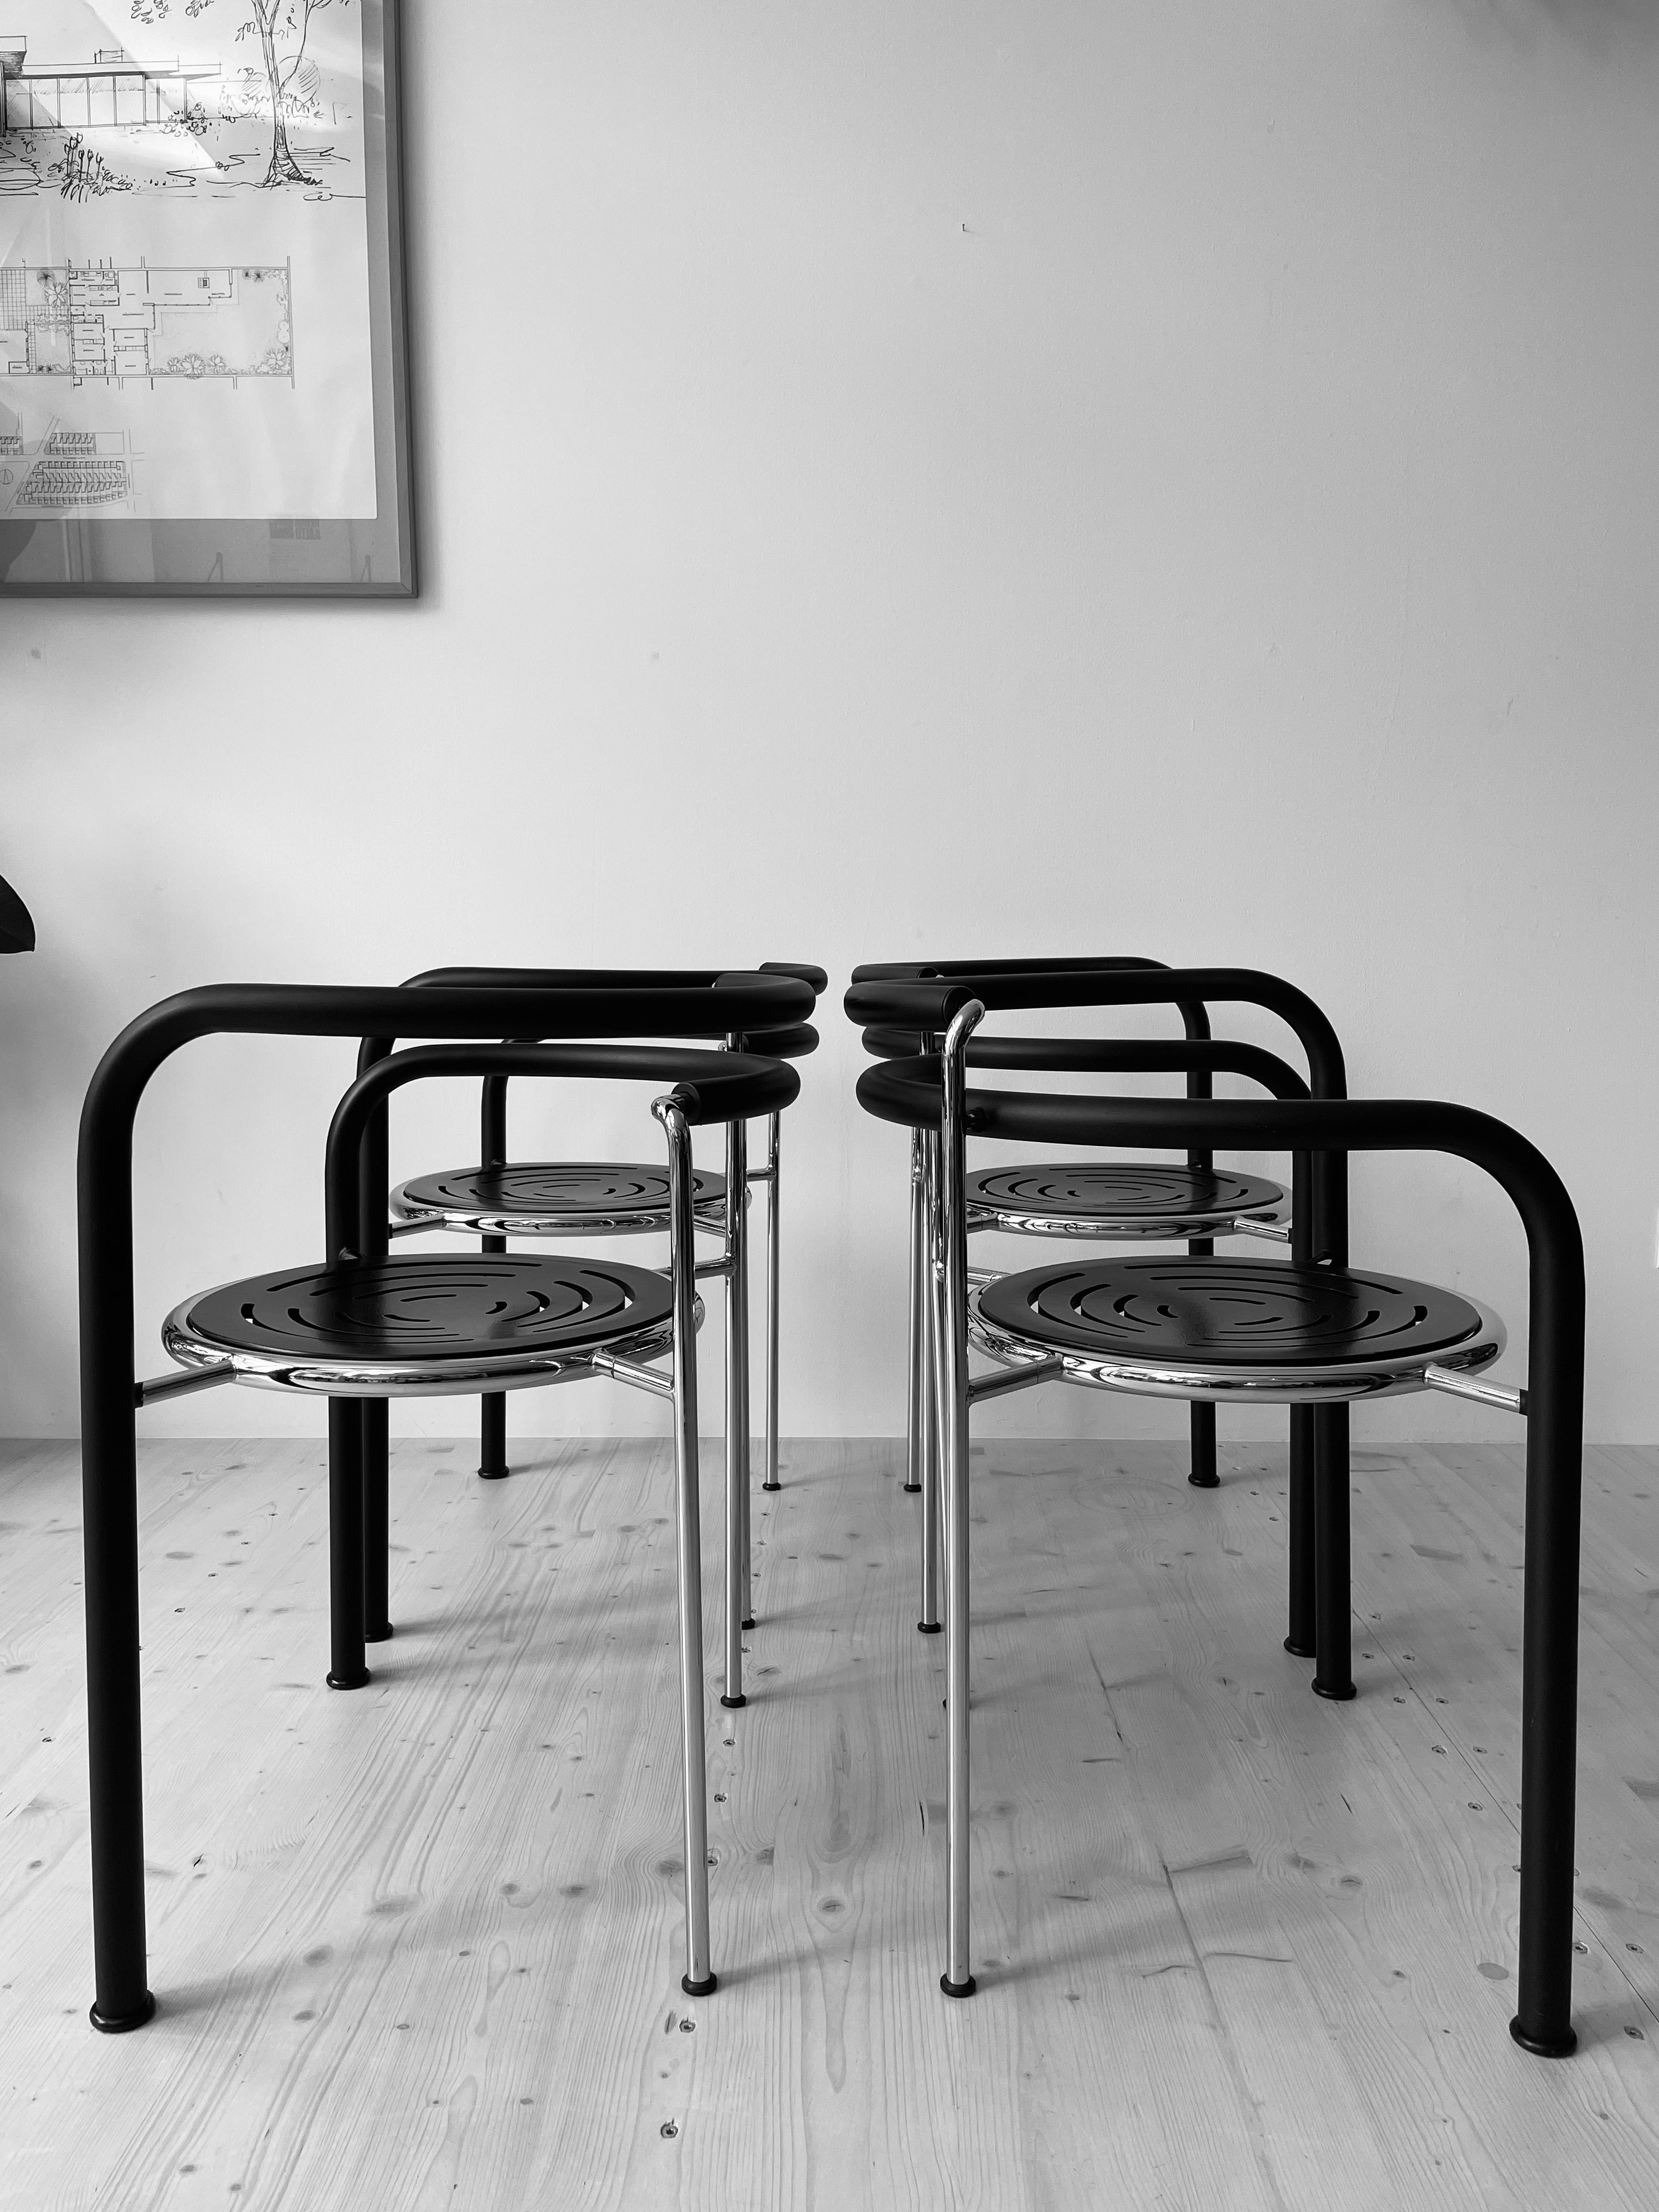 Dark Horse Dining Chair Set by Rud Thygesen & Johnny Sørensen. Produced by Botium. Made in Denmark, 1980s. Available at heyday möbel, Grubenstrasse 19, 8045 Zürich, Switzerland.